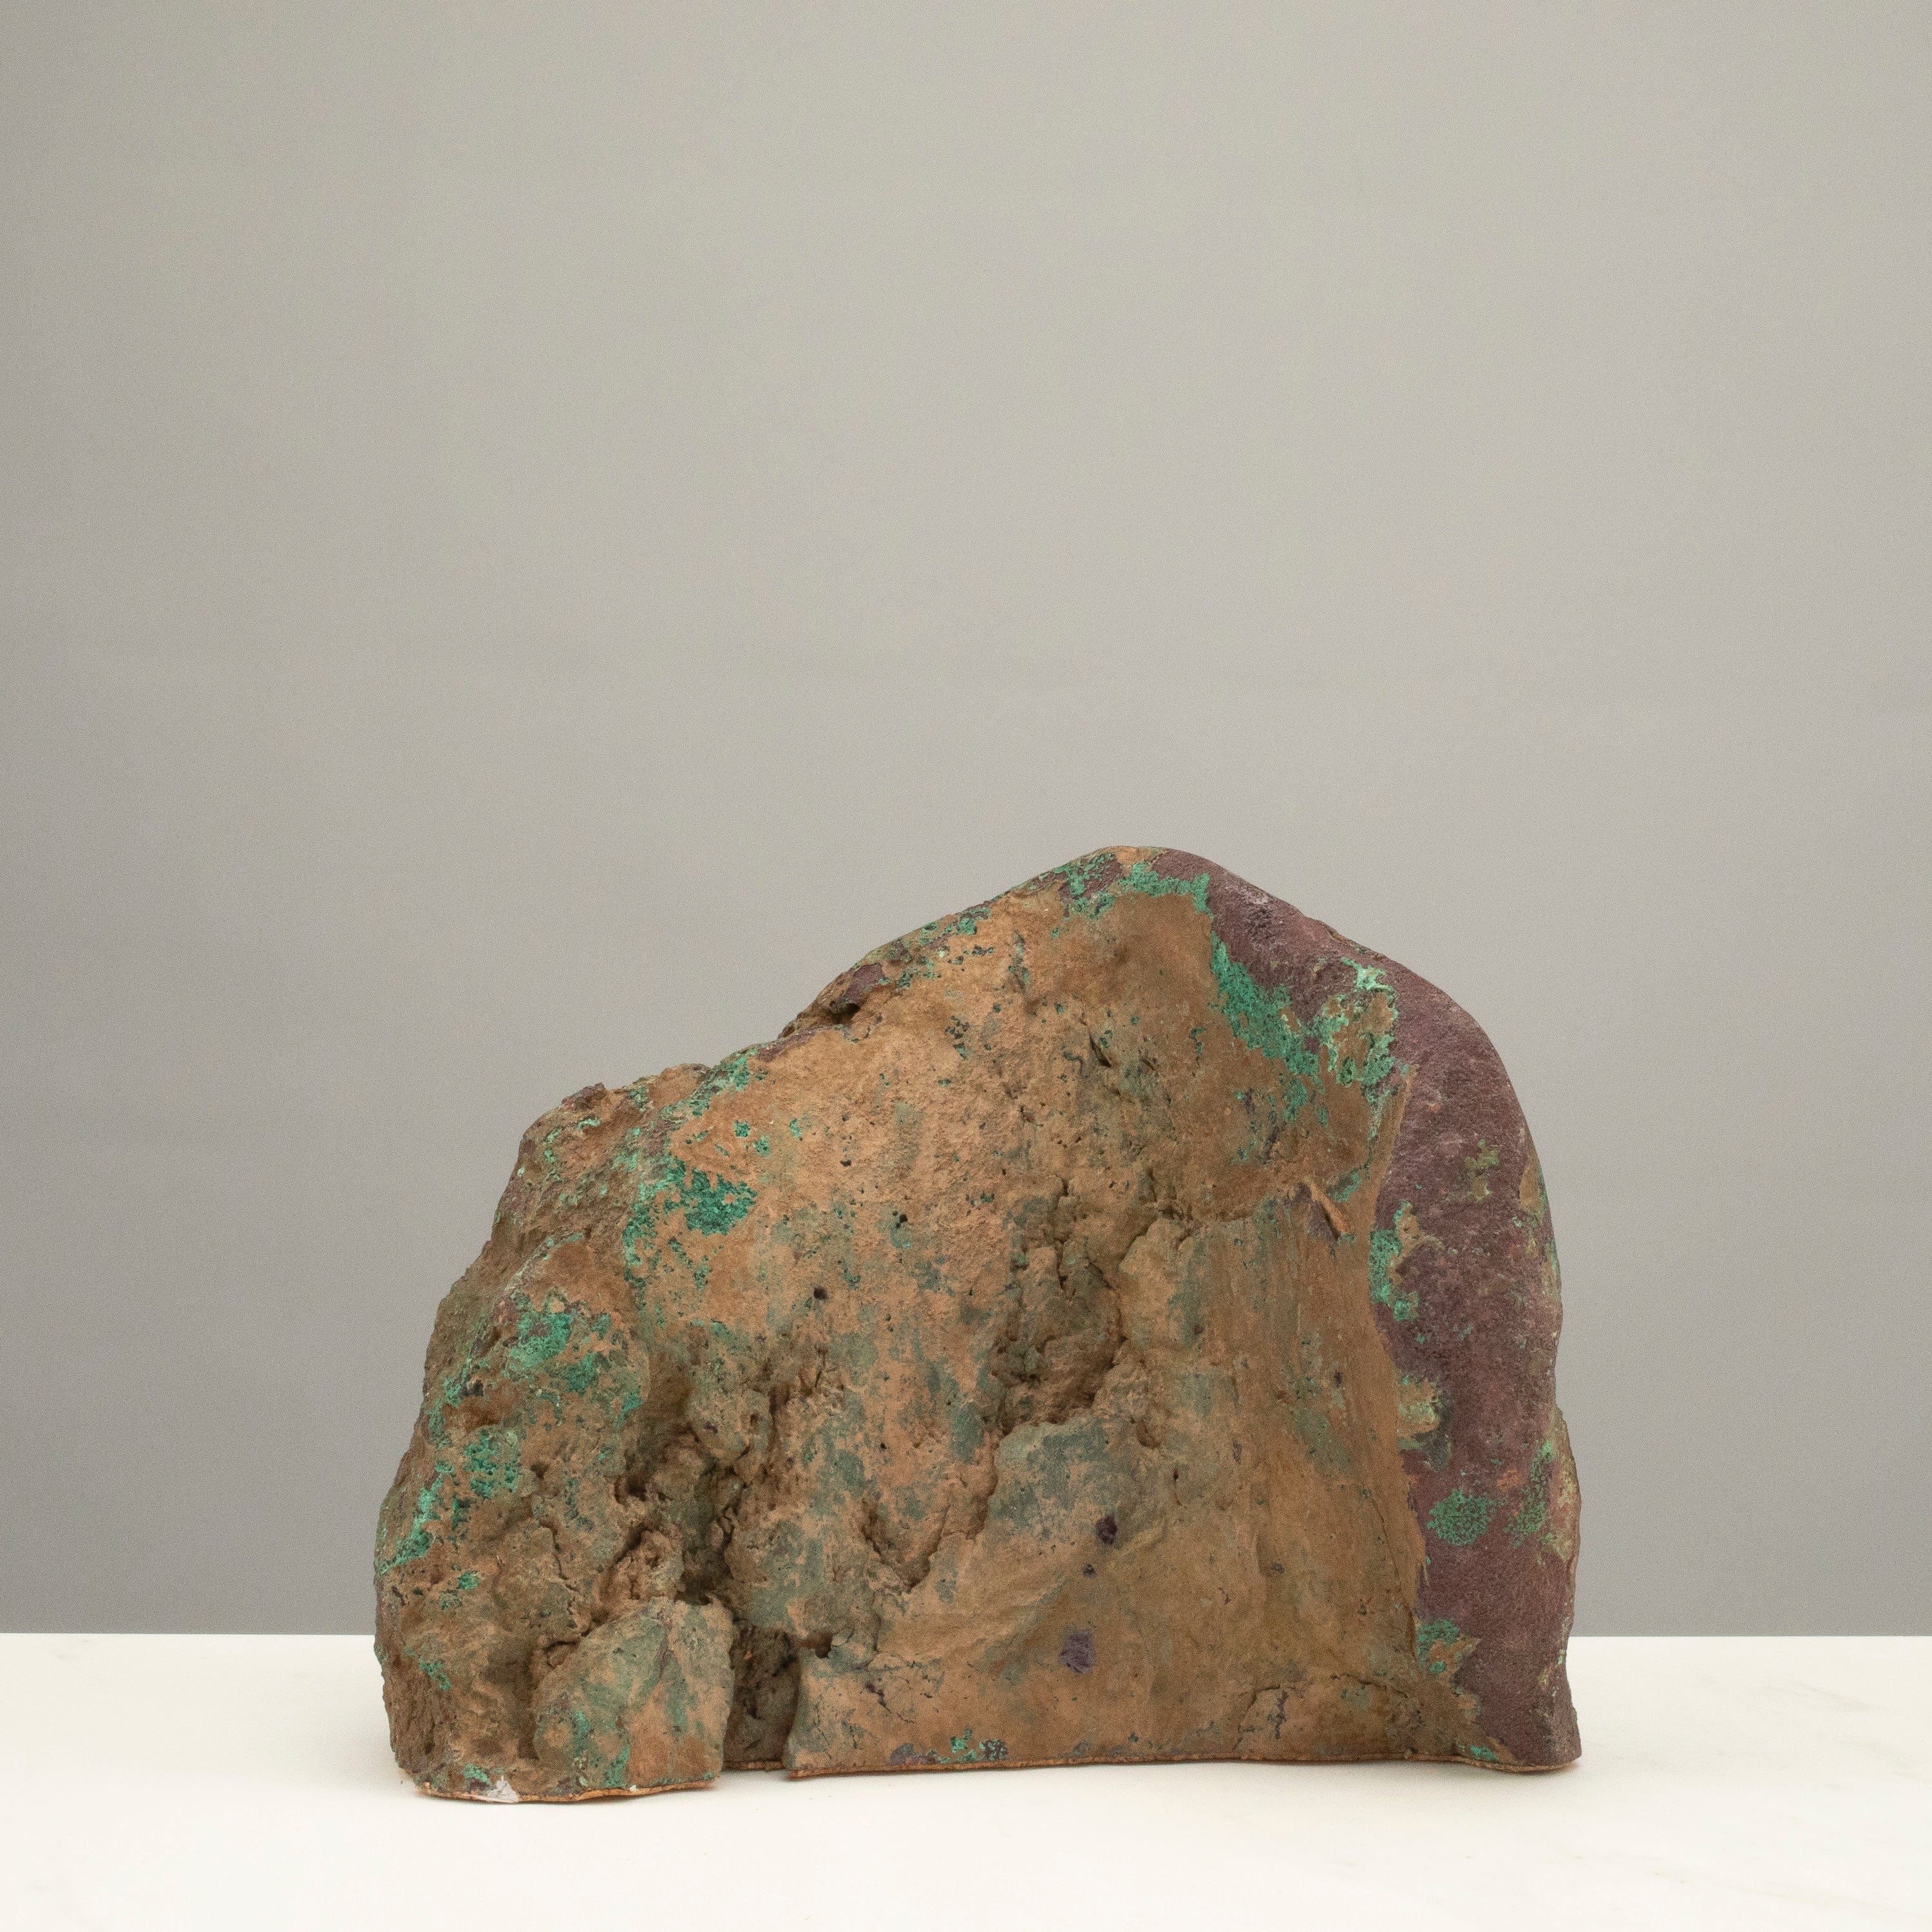 Kalifano Copper Copper Butchite from Michigan - 8" / 18.4bs CPR3800.001